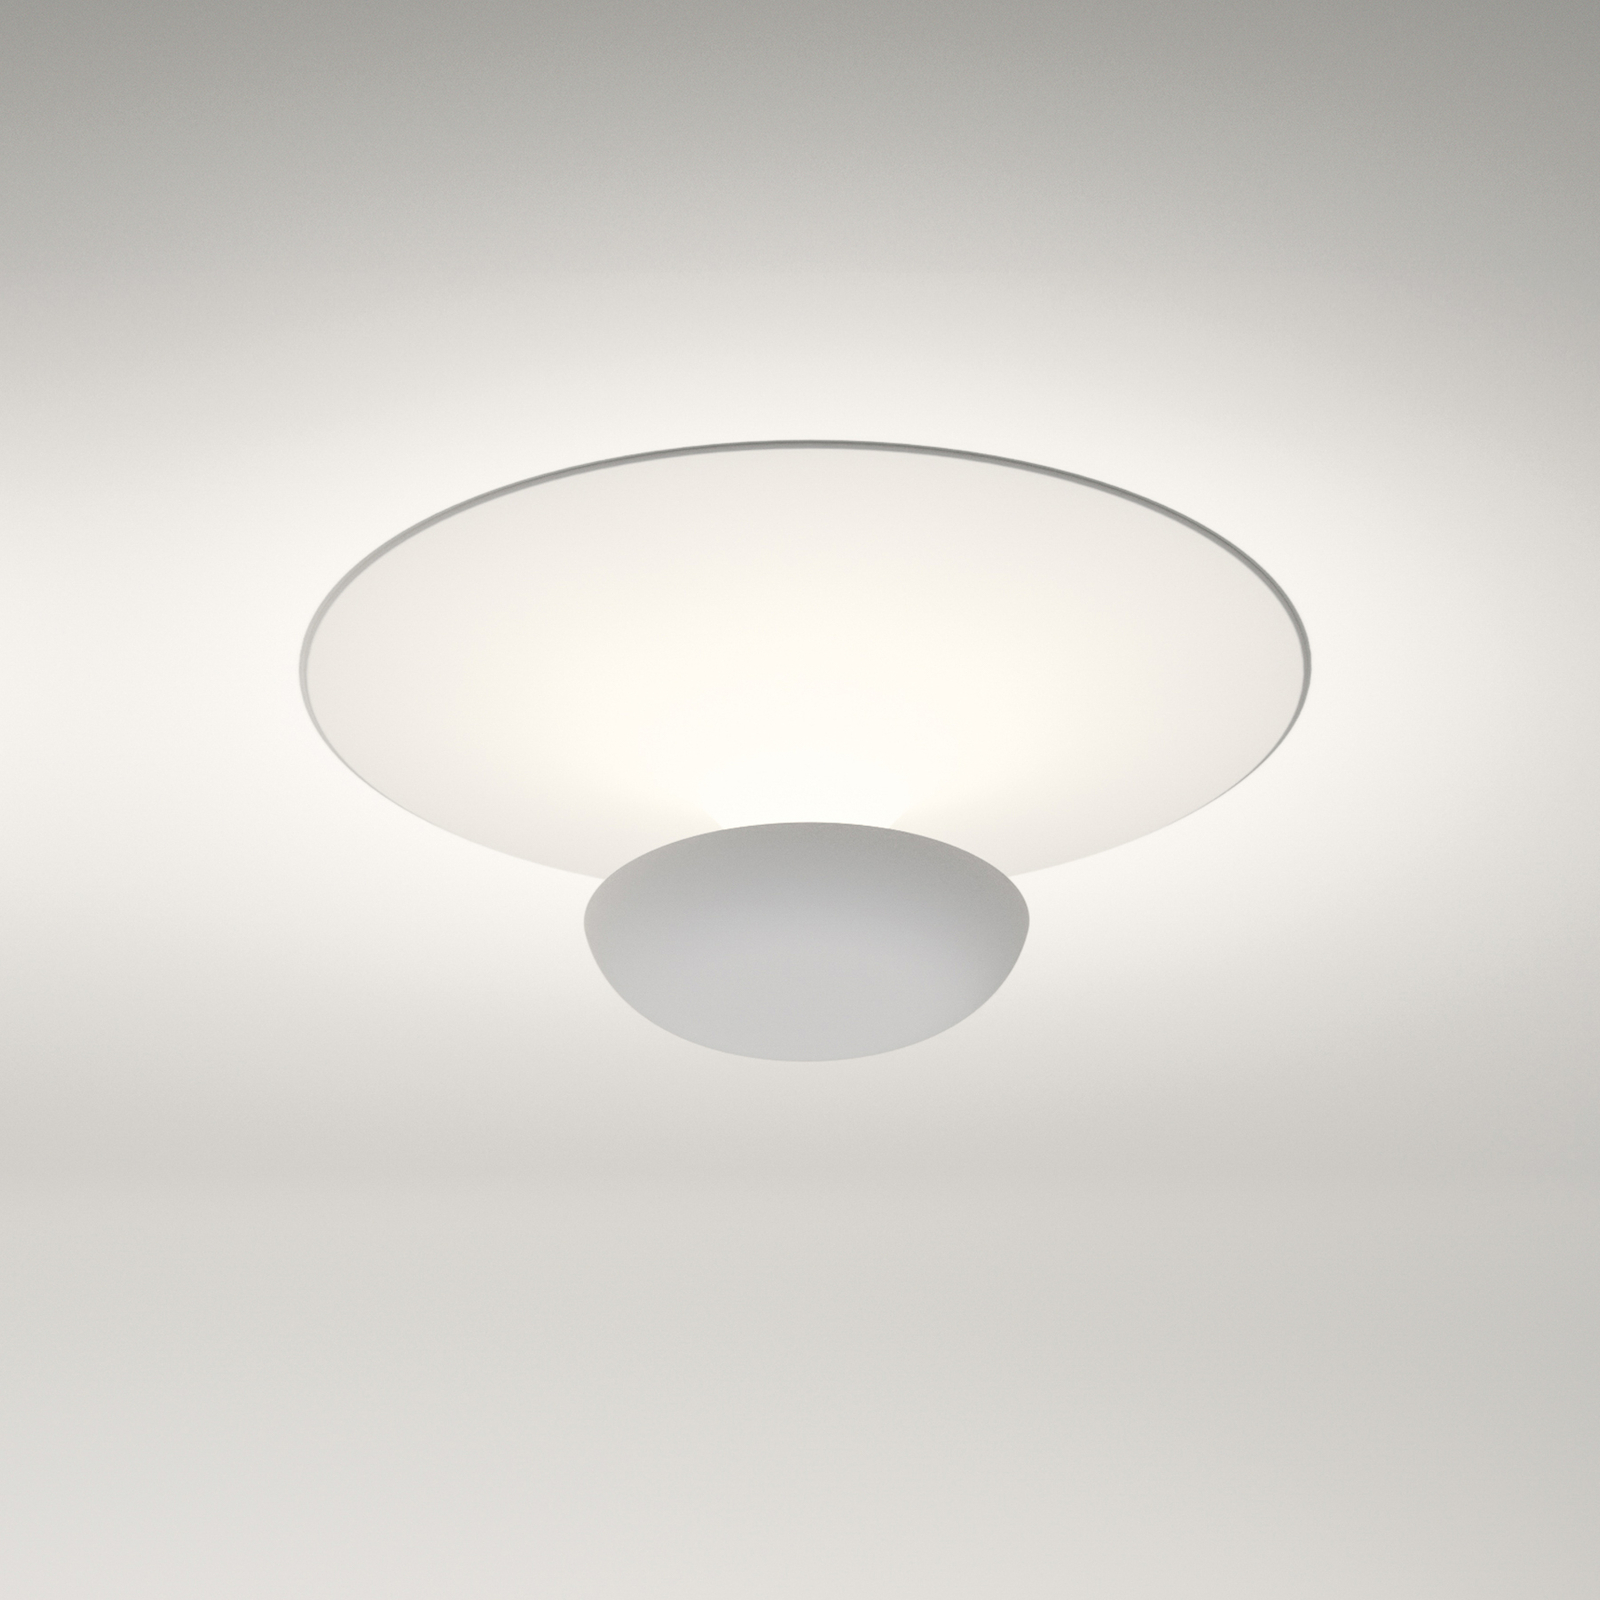 Vibia Funnel LED ceiling light white Ø 16cm 2,700K